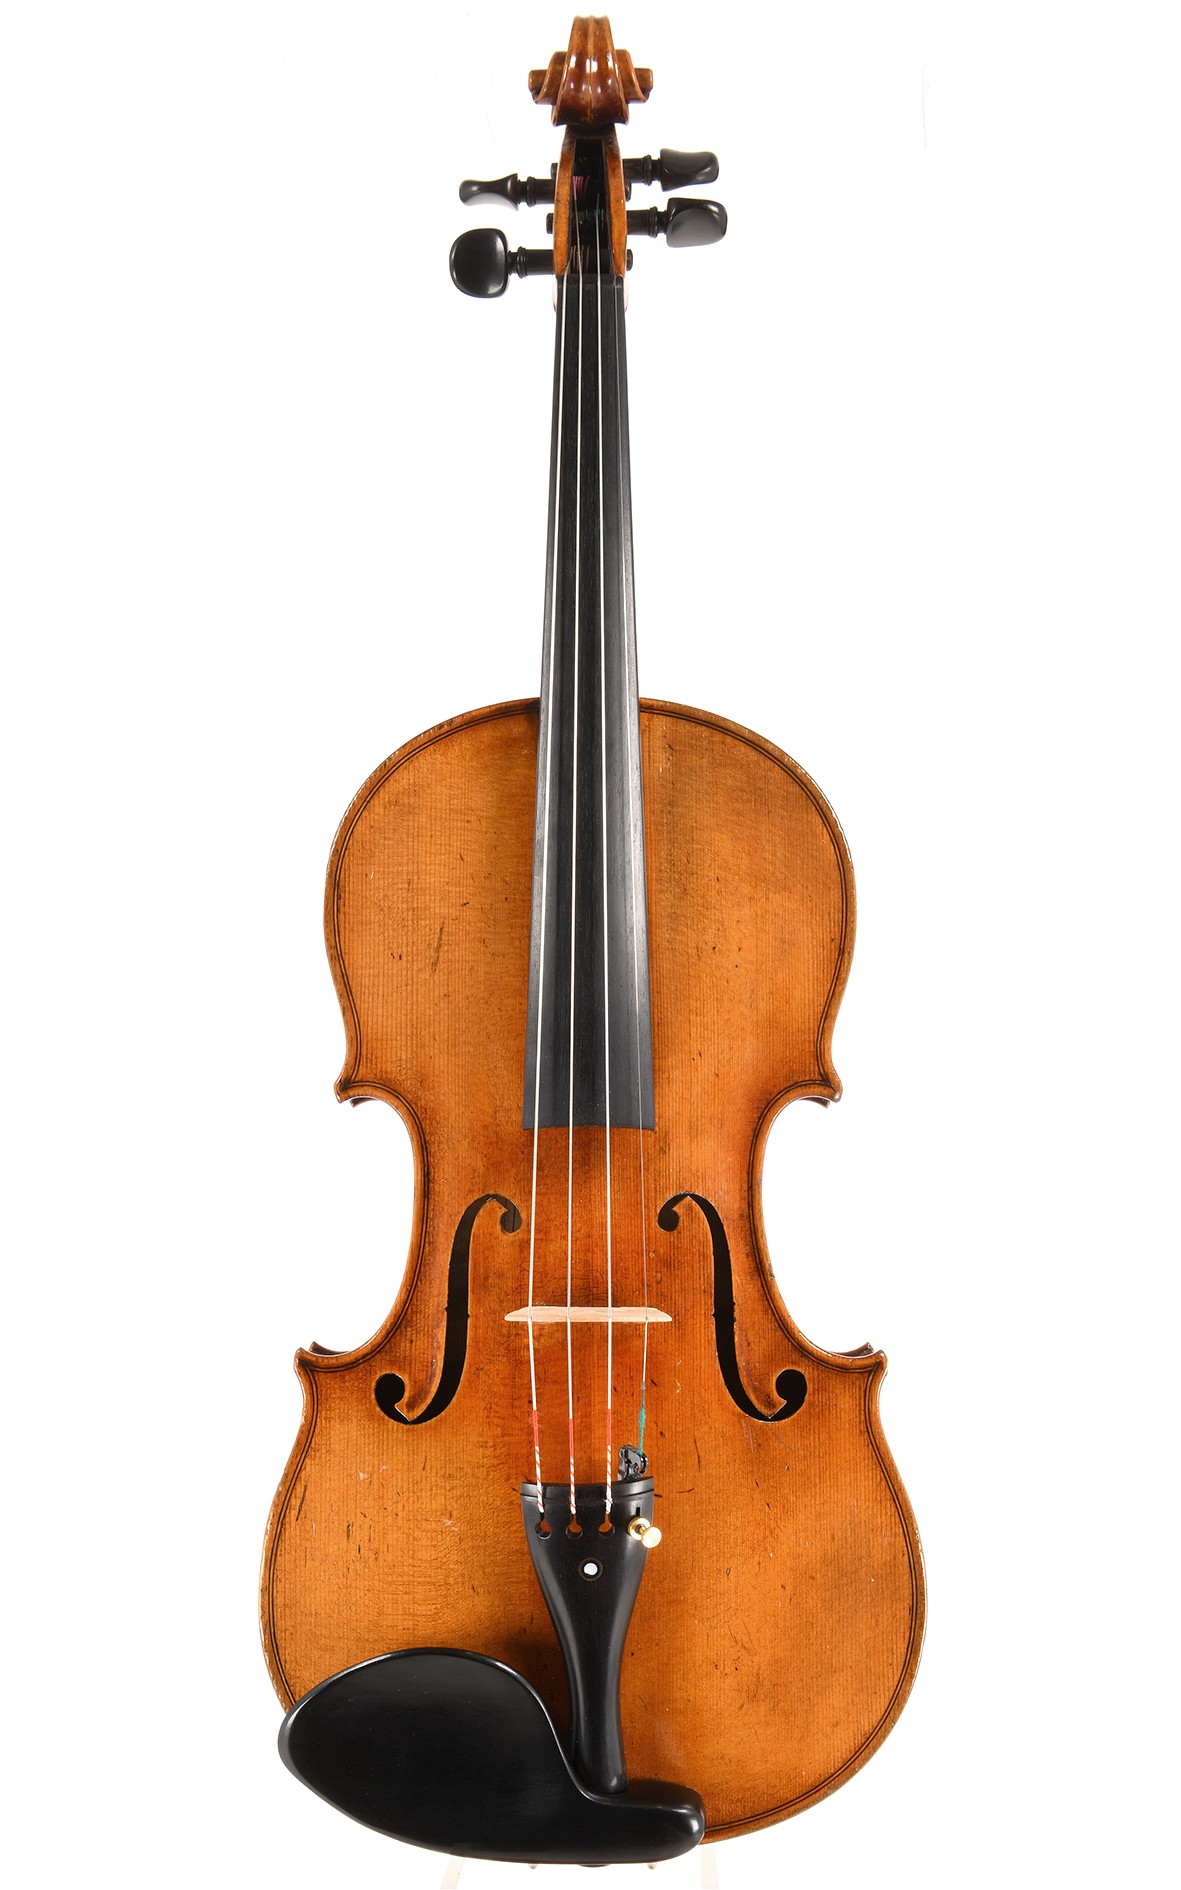 Powerful Markneukirchen violin, master work, 10-20 years old